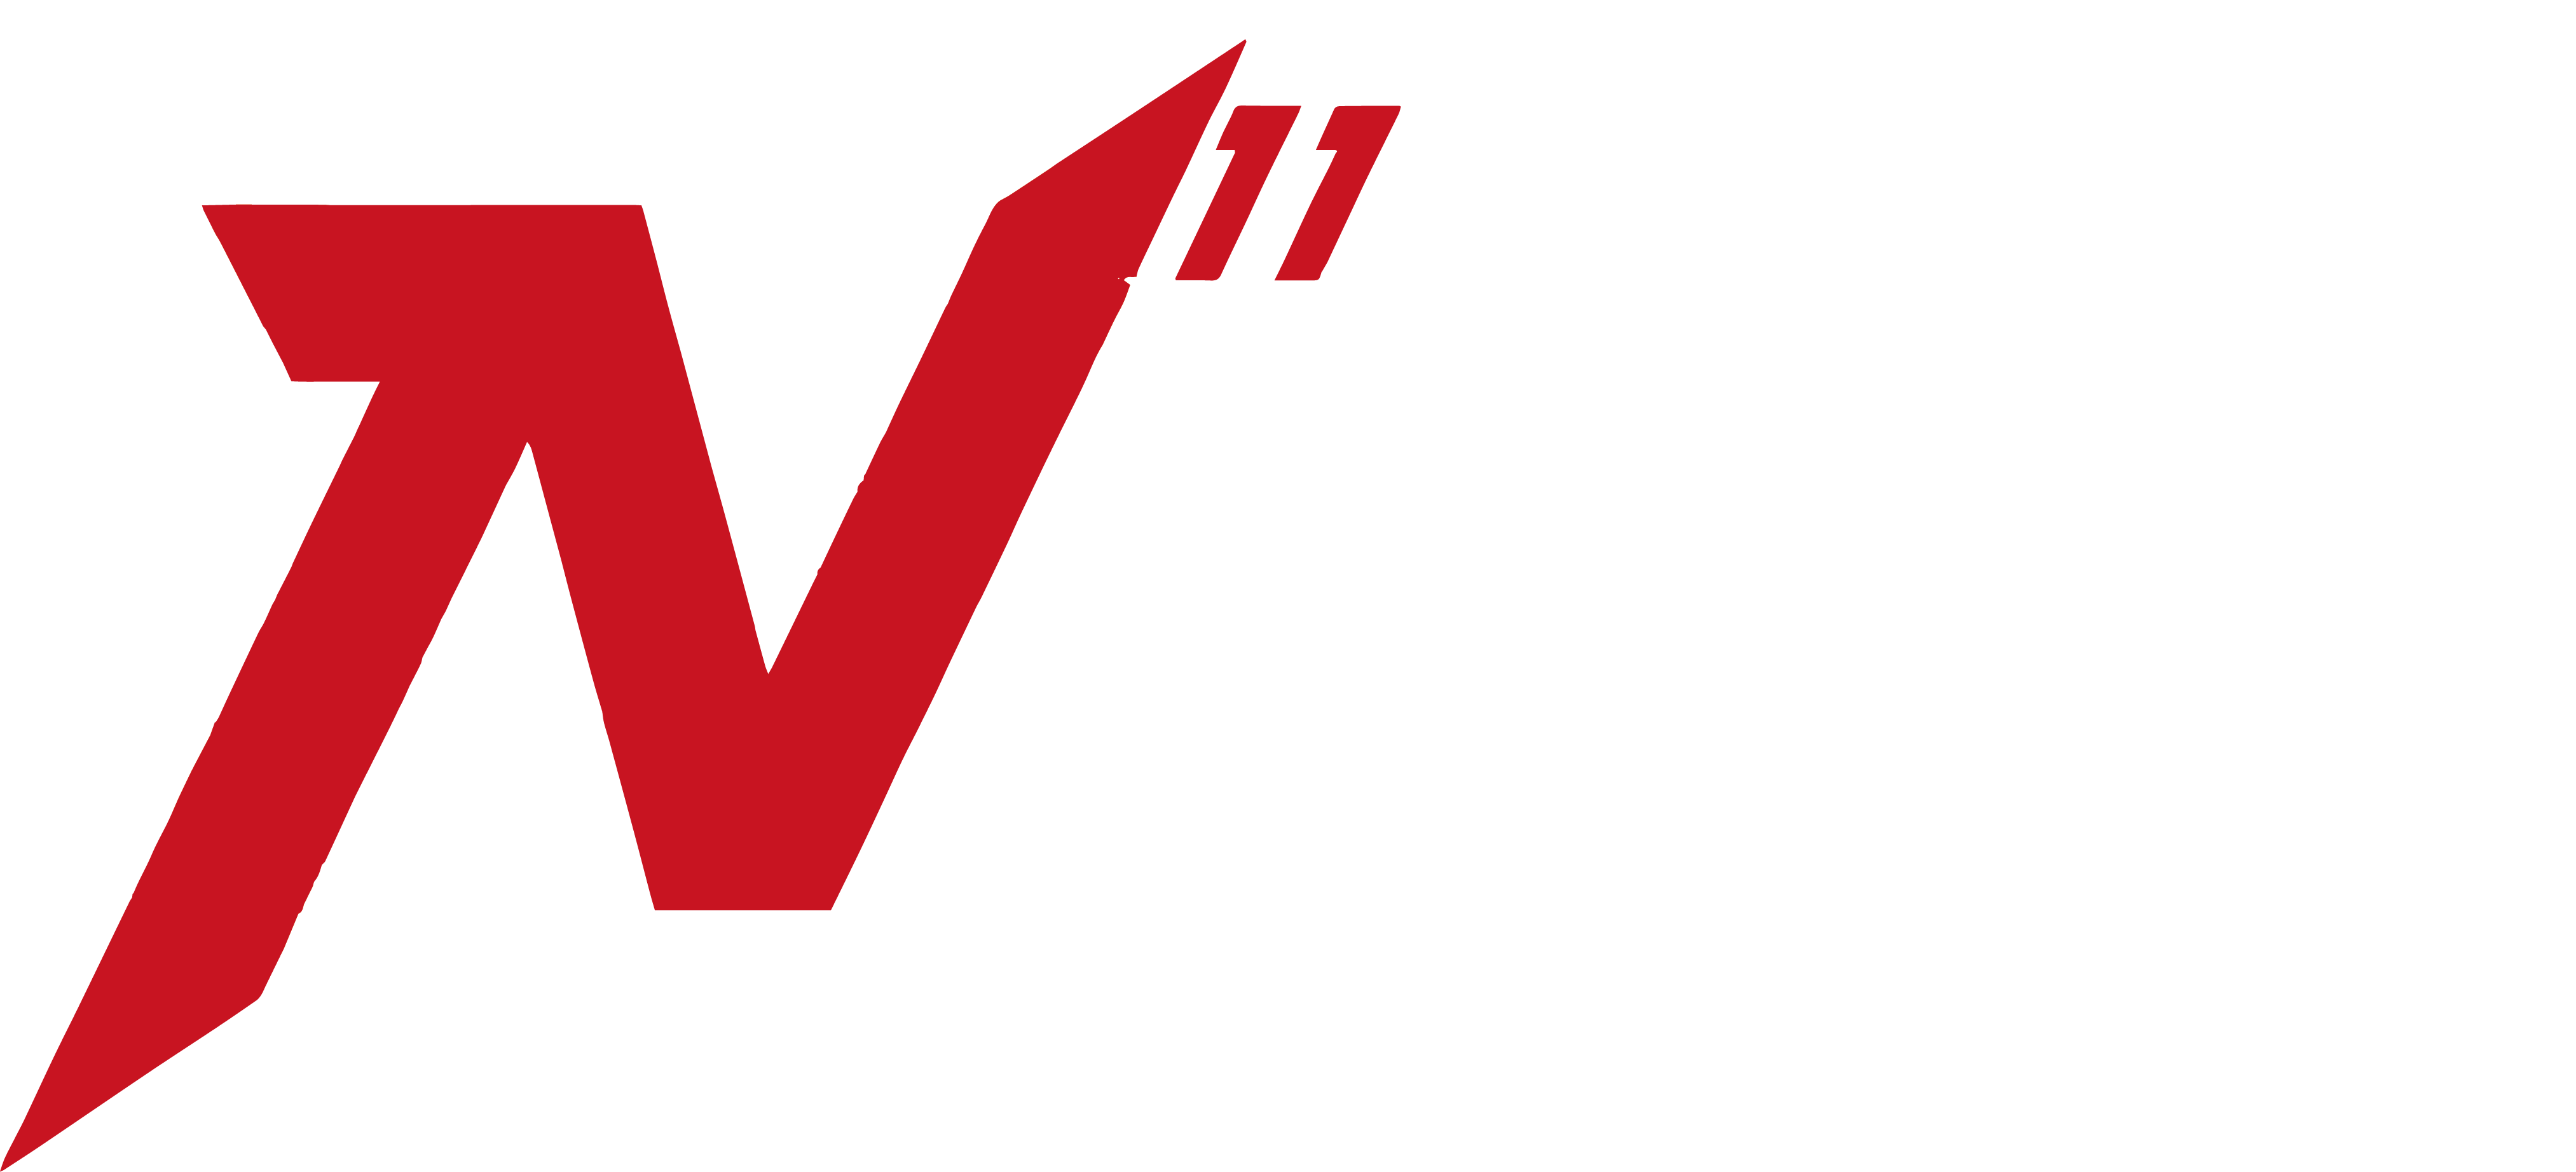 N11 Wrocławskie Centrum Sportu